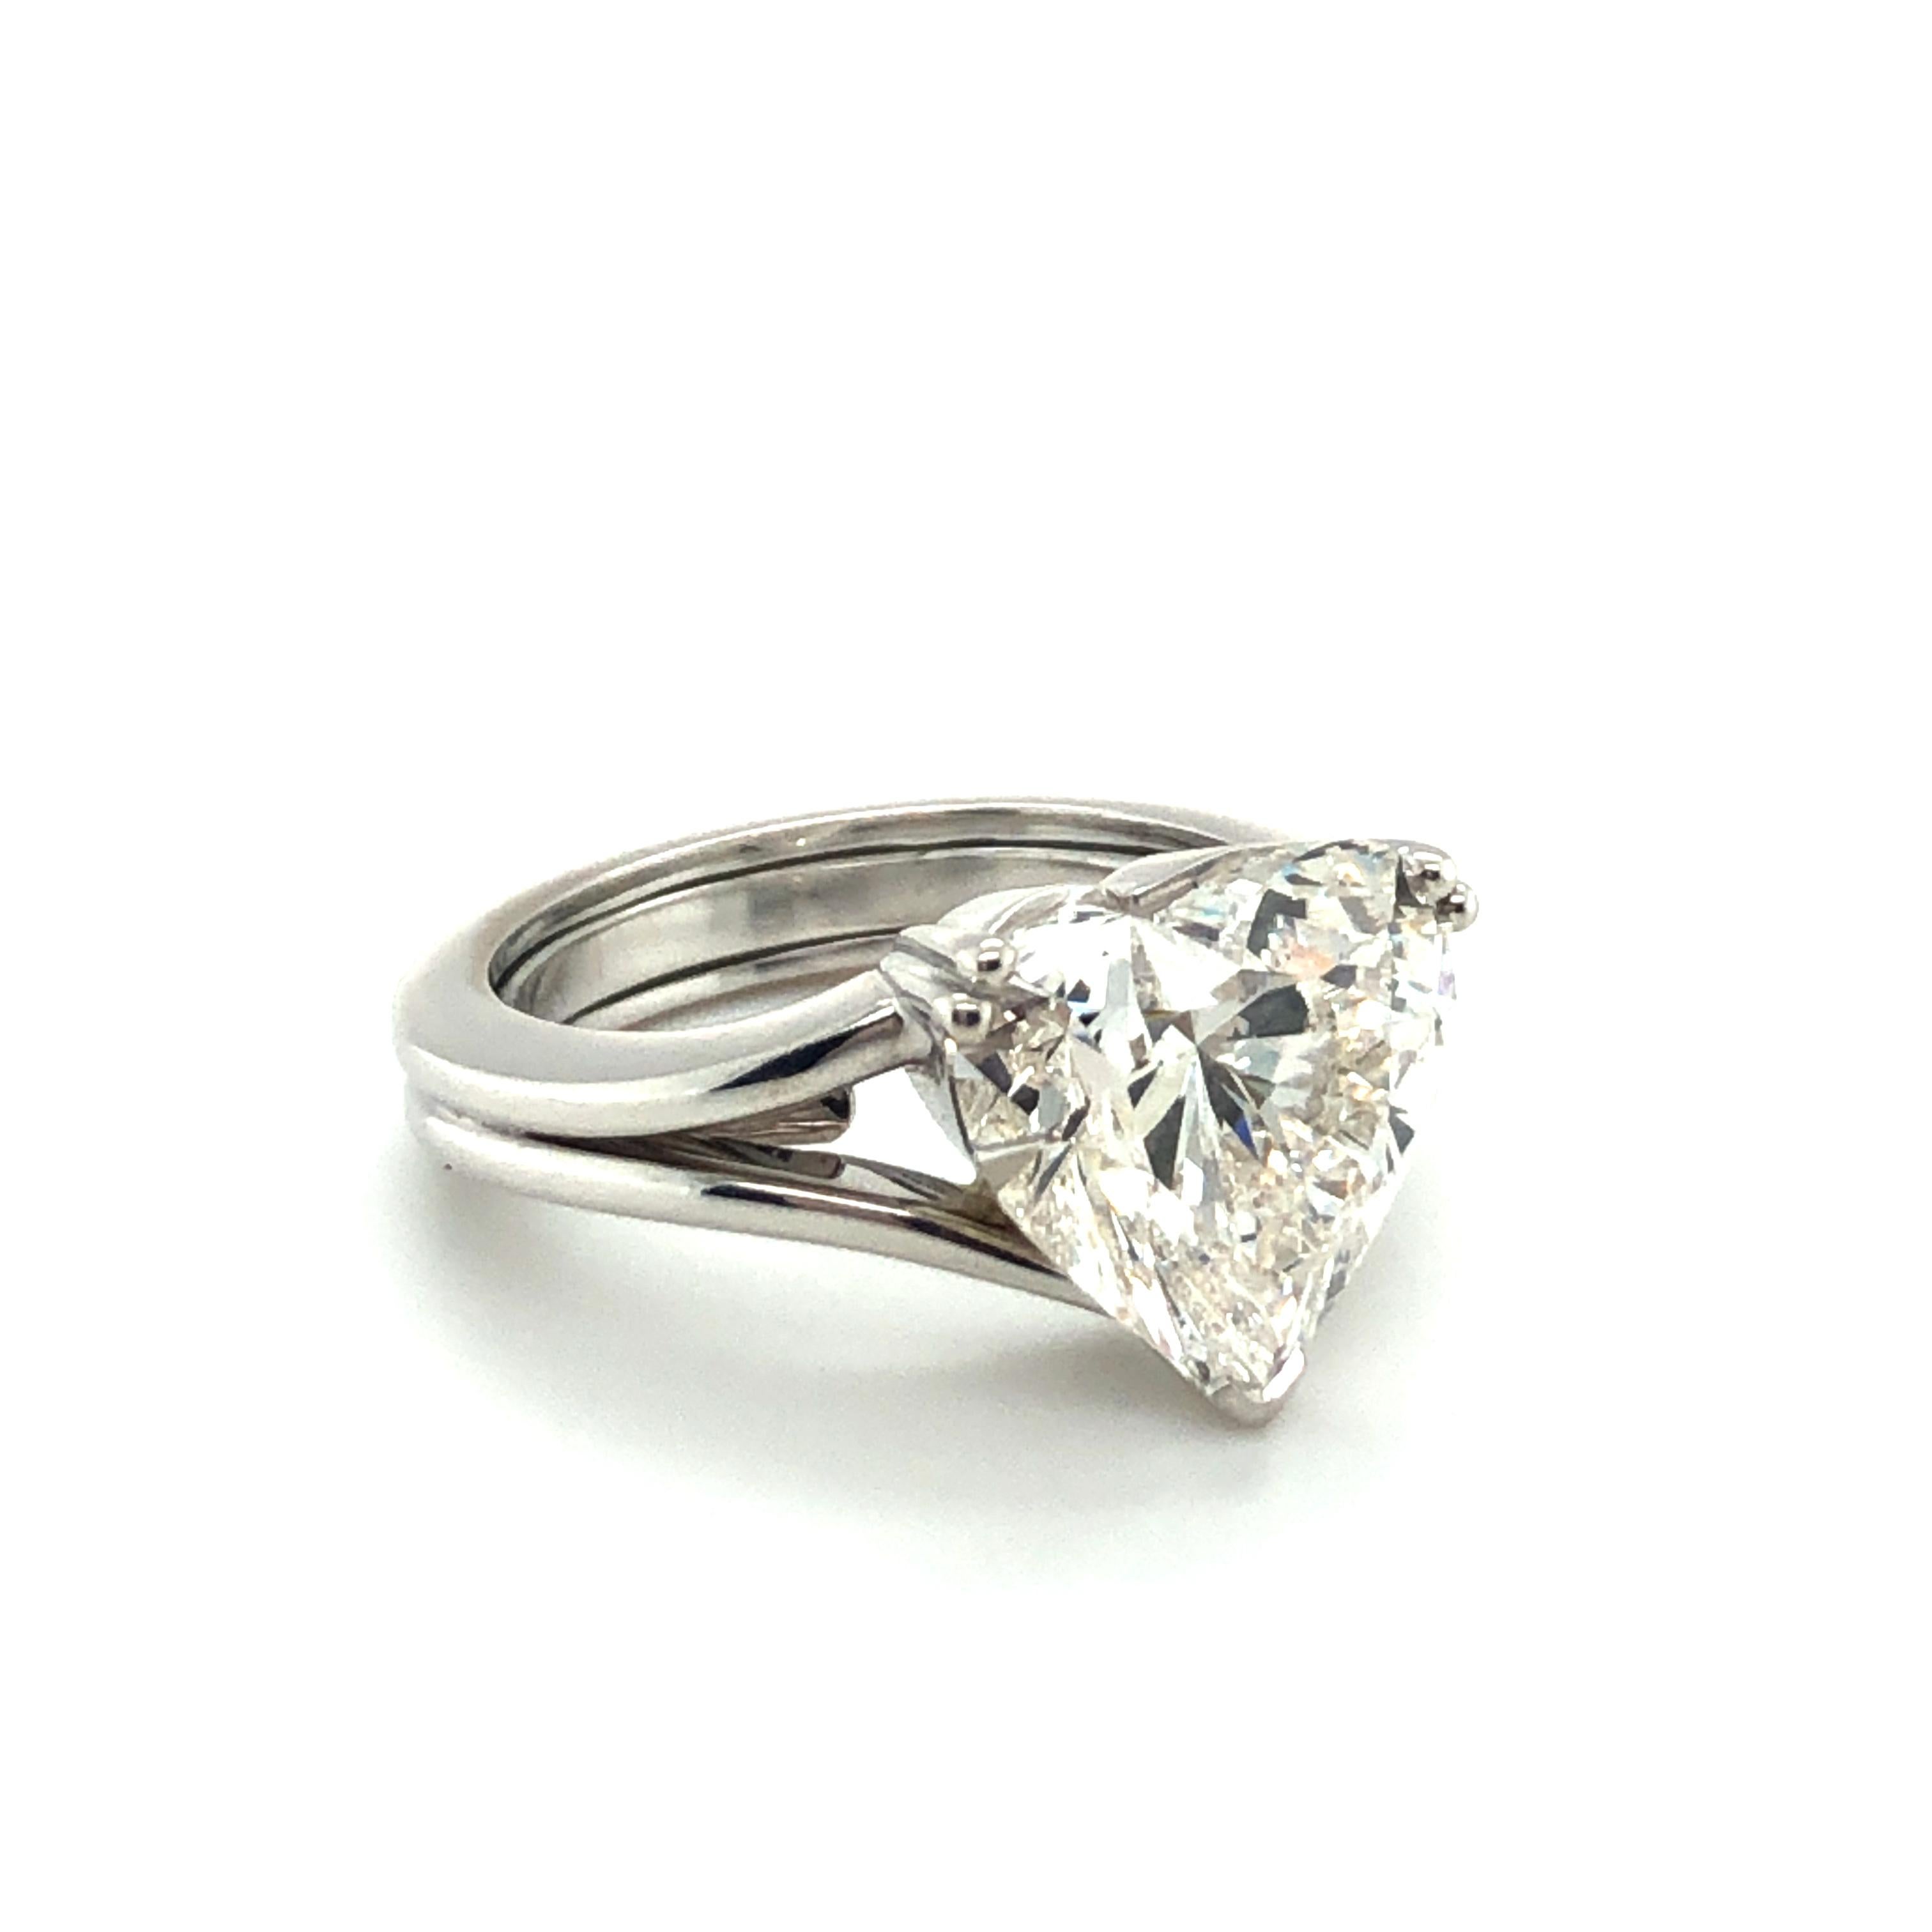 heart shaped diamond ring